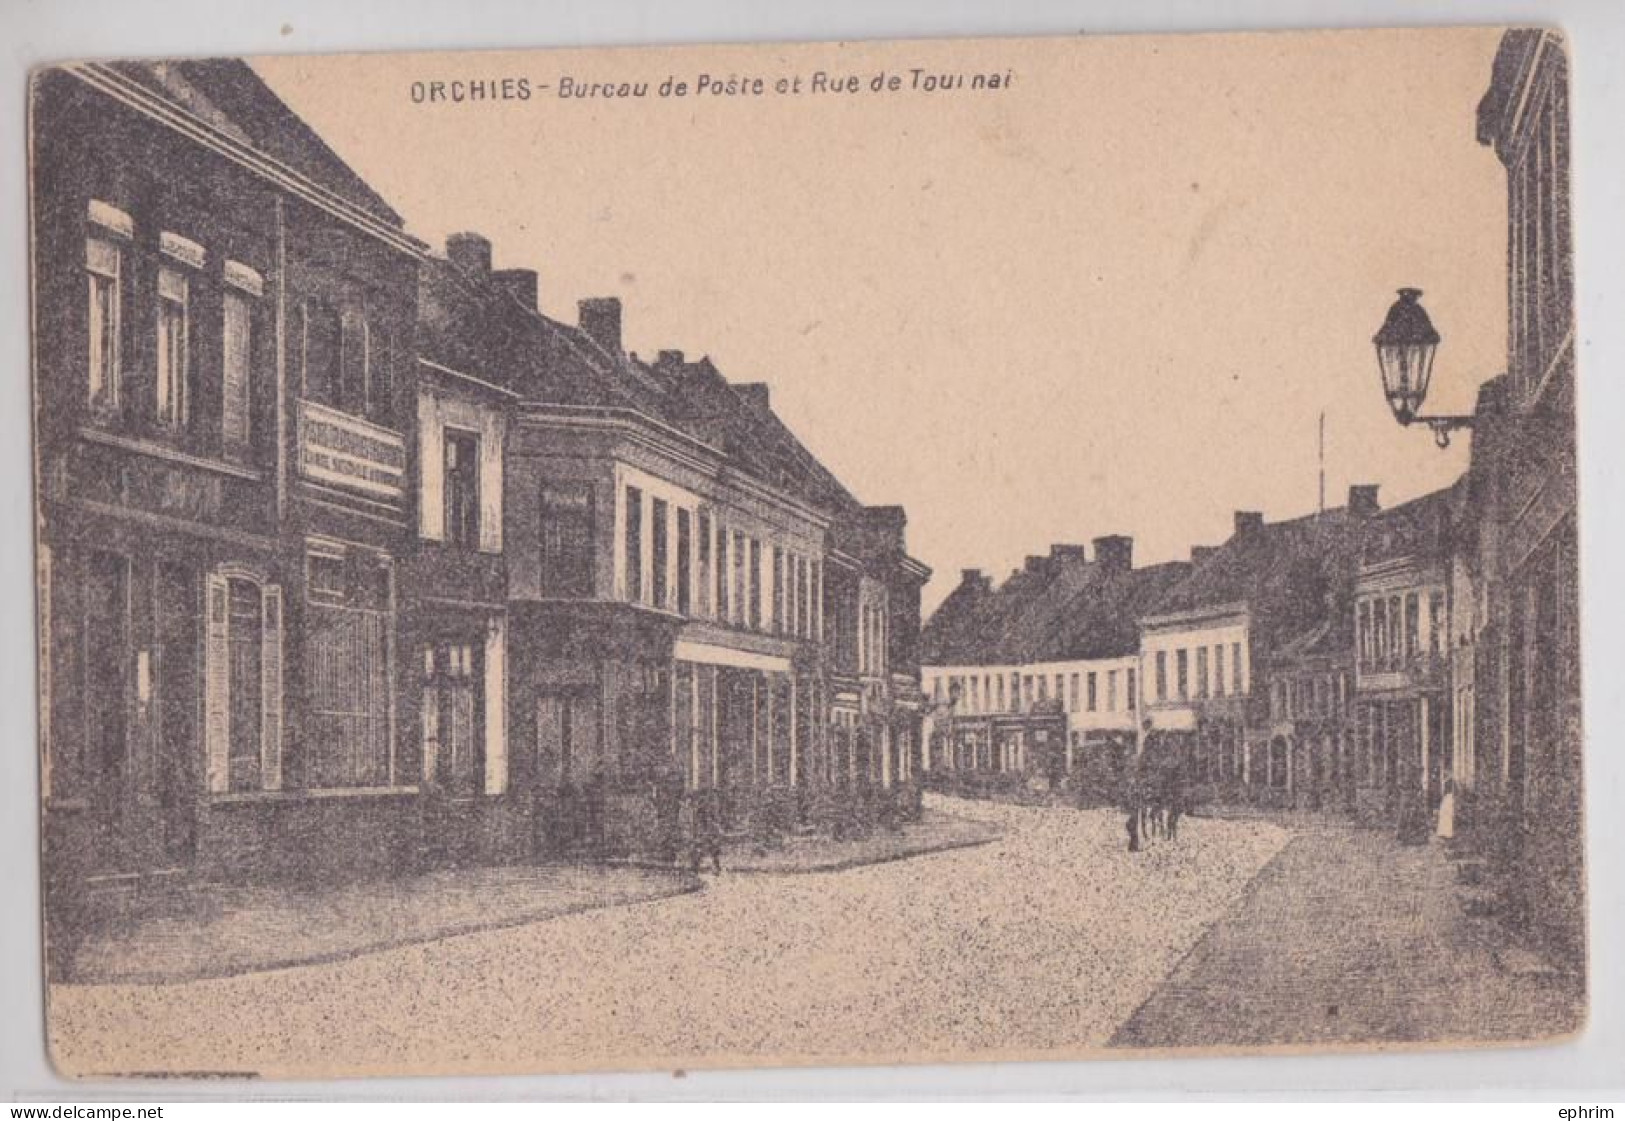 Orchies Nord Bureau De Poste Et Rue De Tournai - Orchies